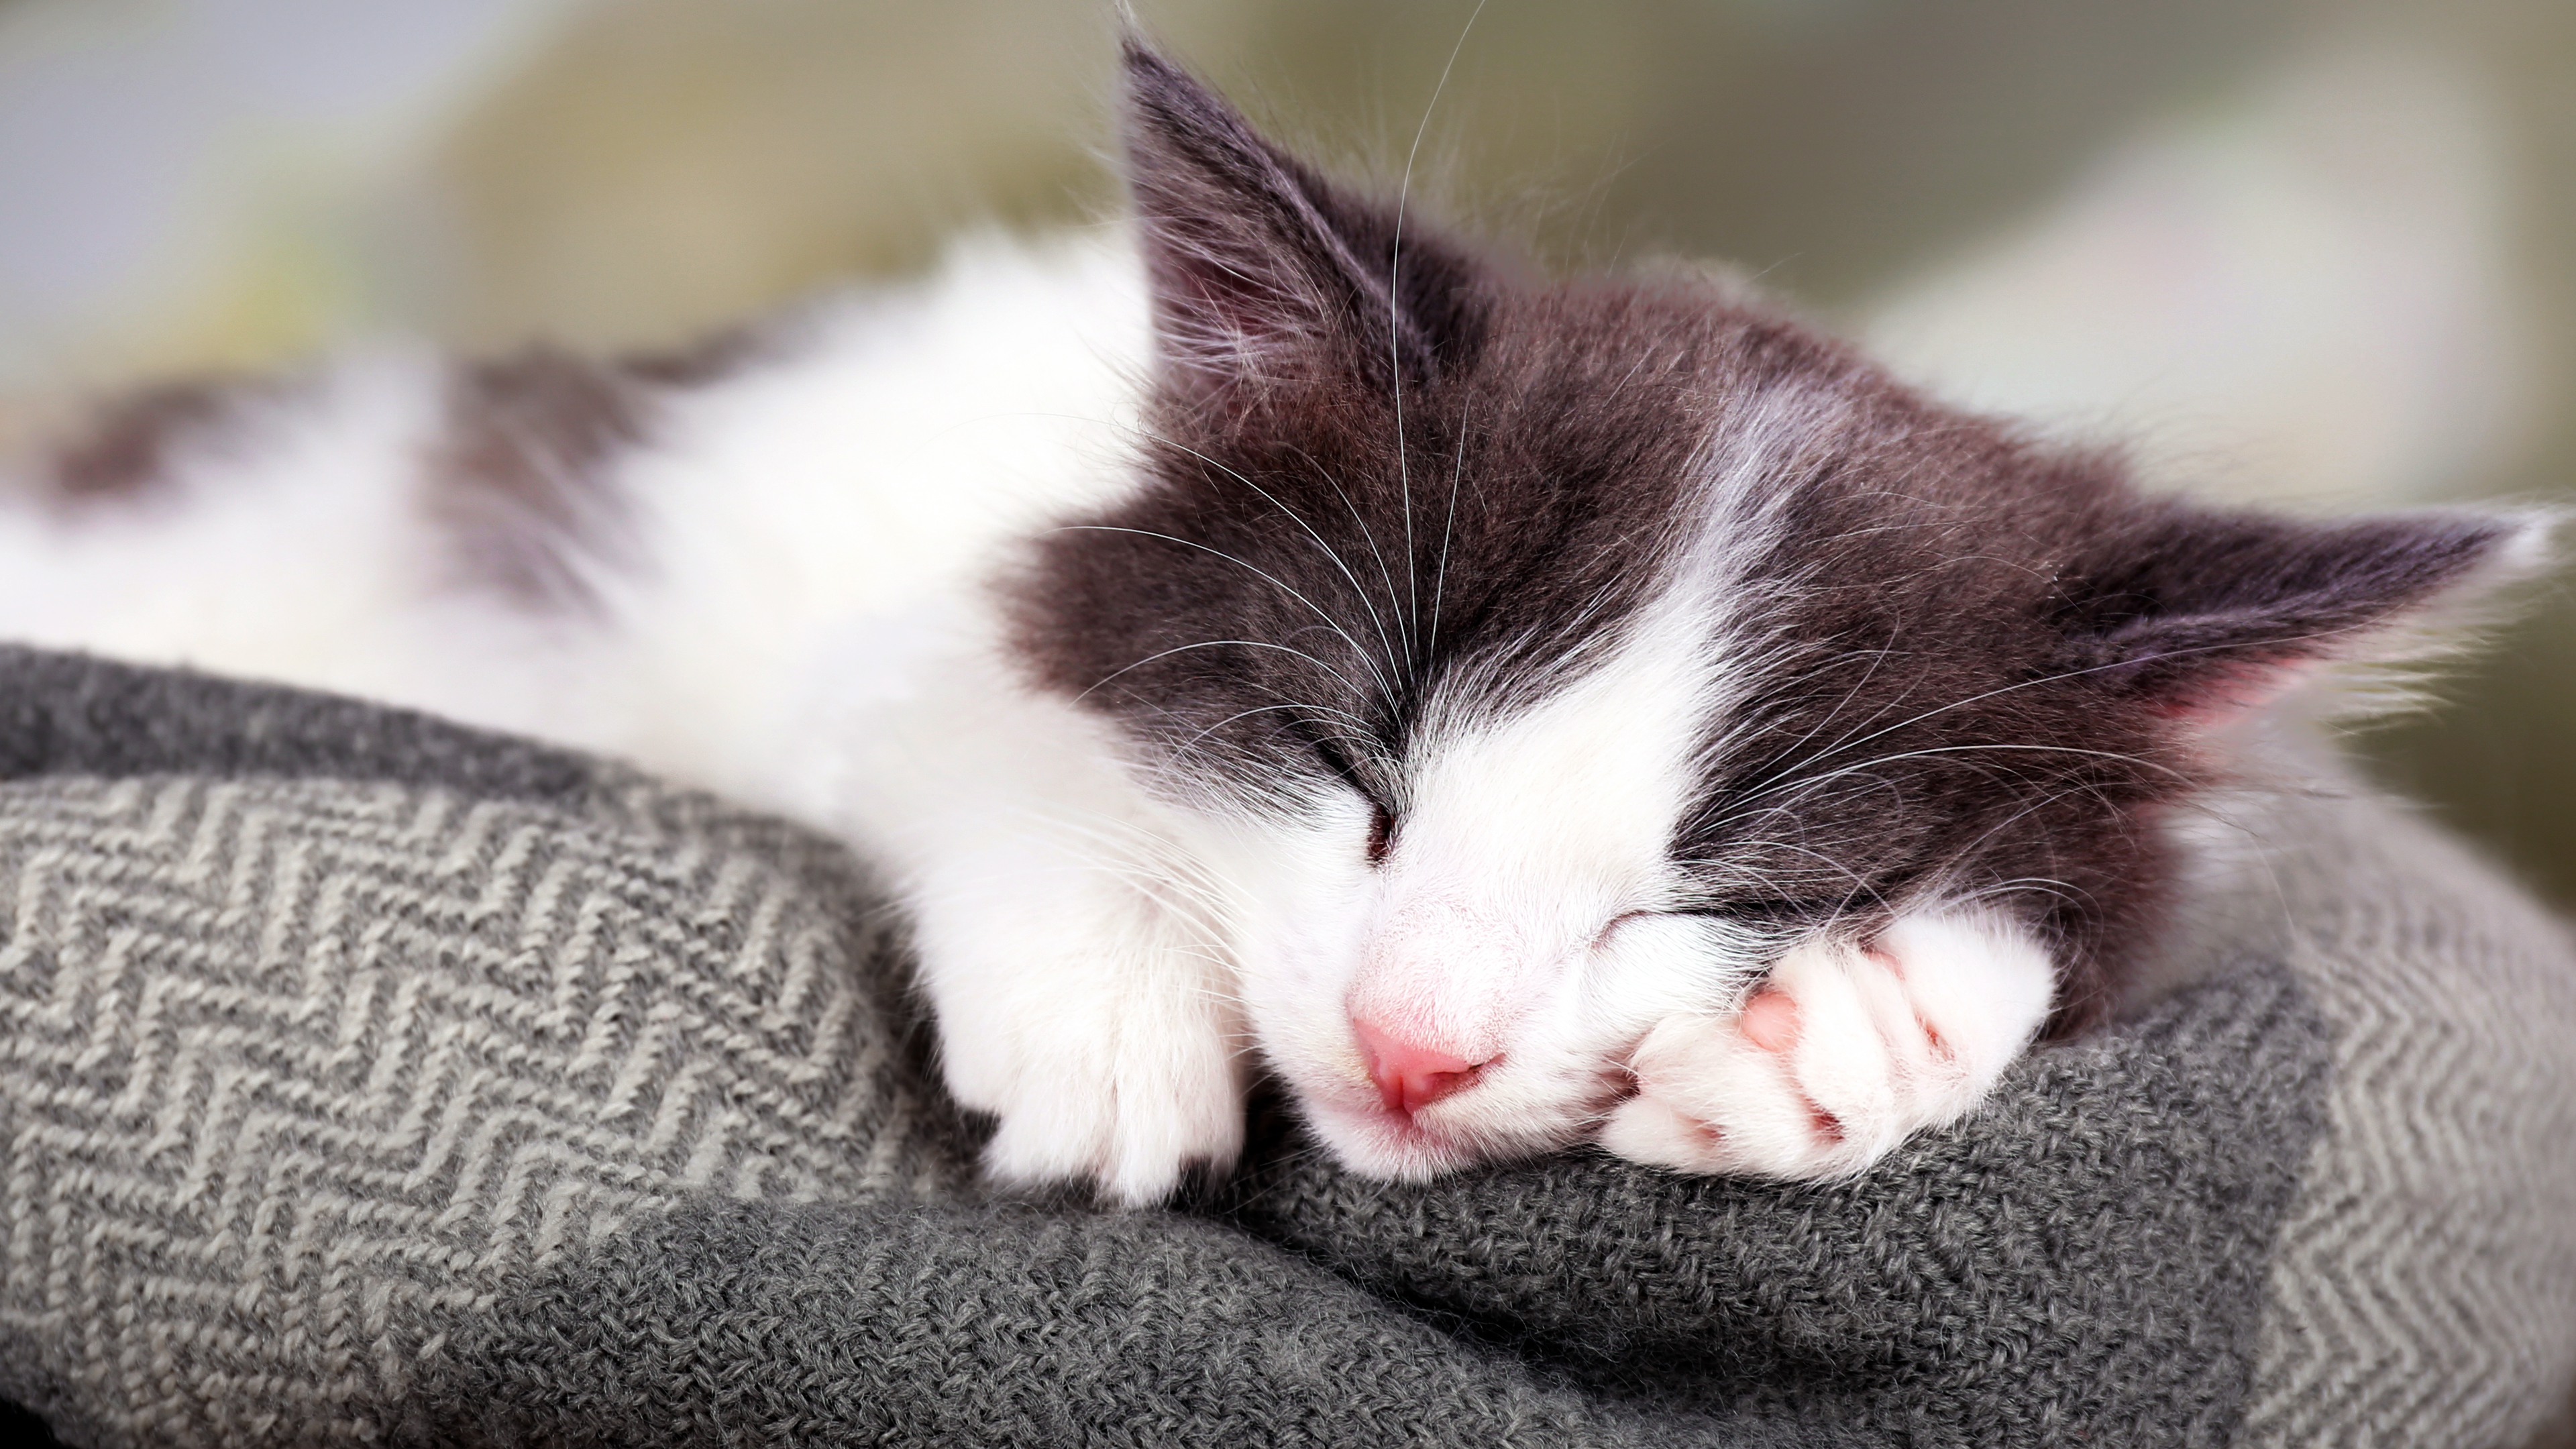 Ein Kätzchen, das den Kopf auf seine linke Pfote gelegt hat, schläft auf einer grauen Decke